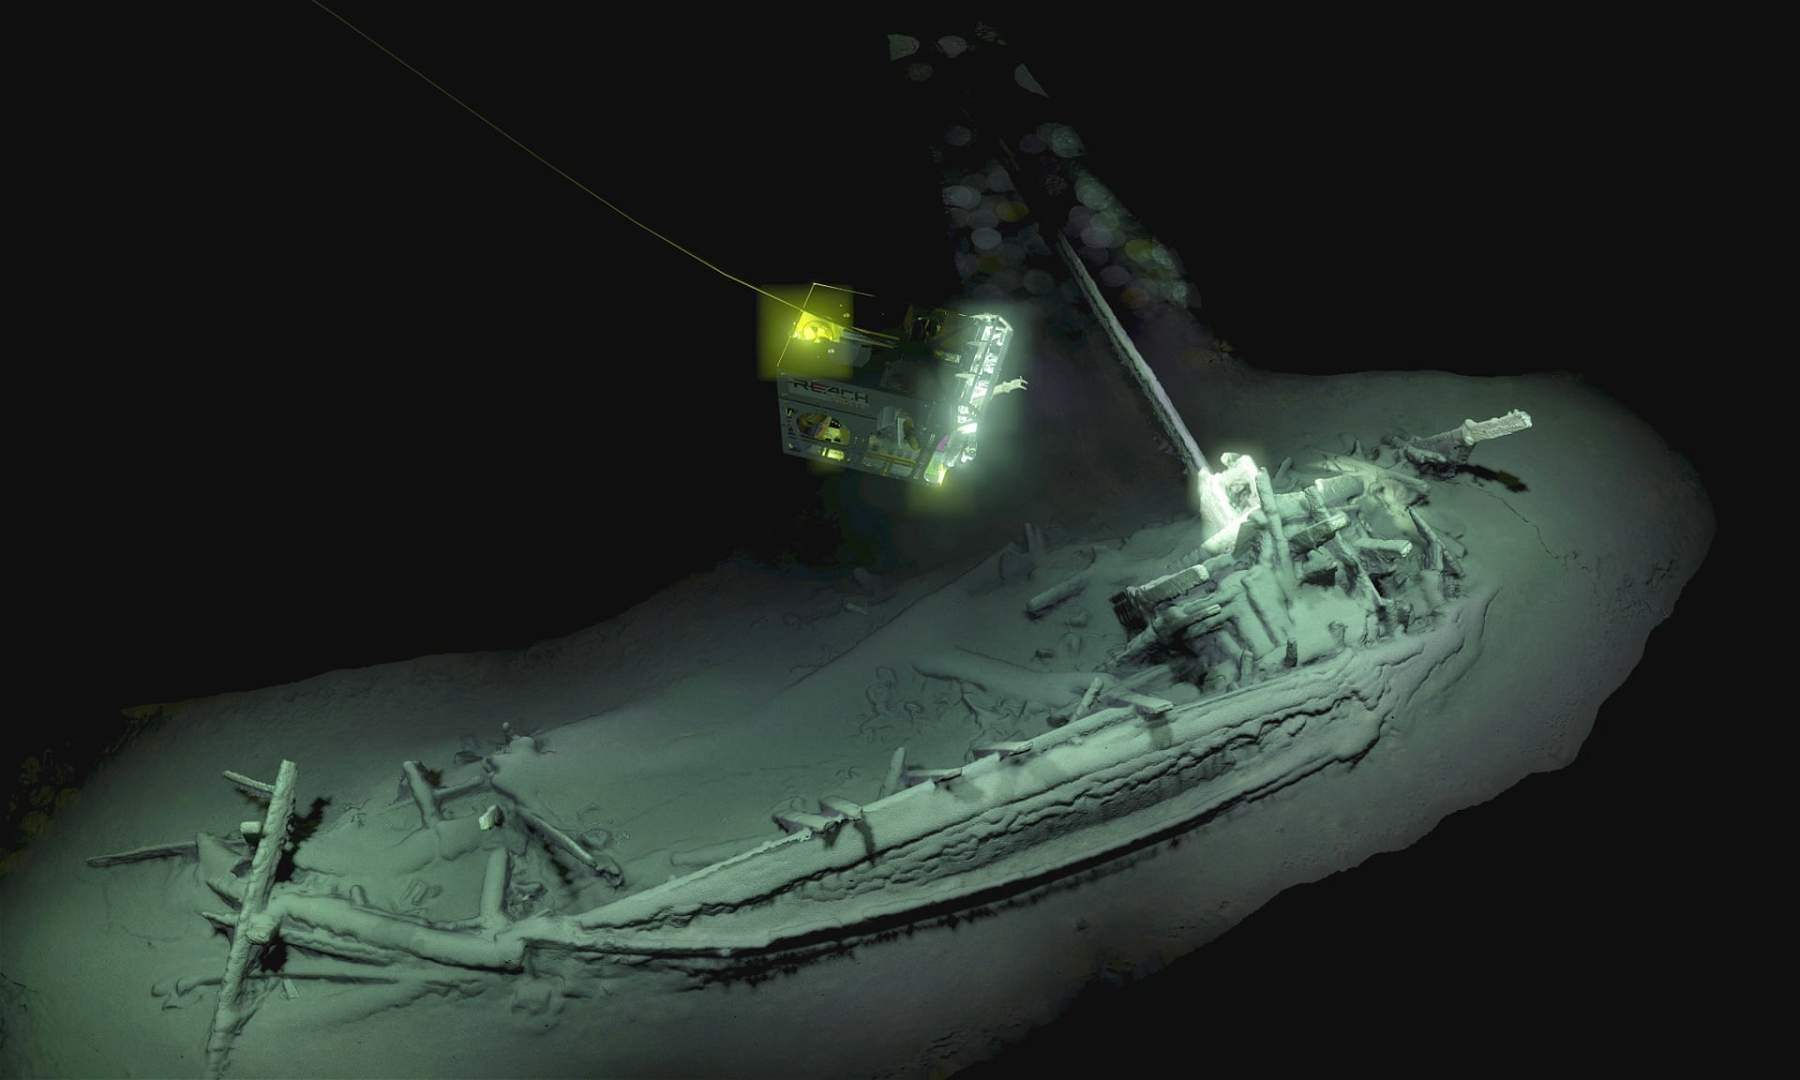 Découverte historique au fond de la mer Noire : le plus vieux navire jamais trouvé, vieux de 2 400 ans